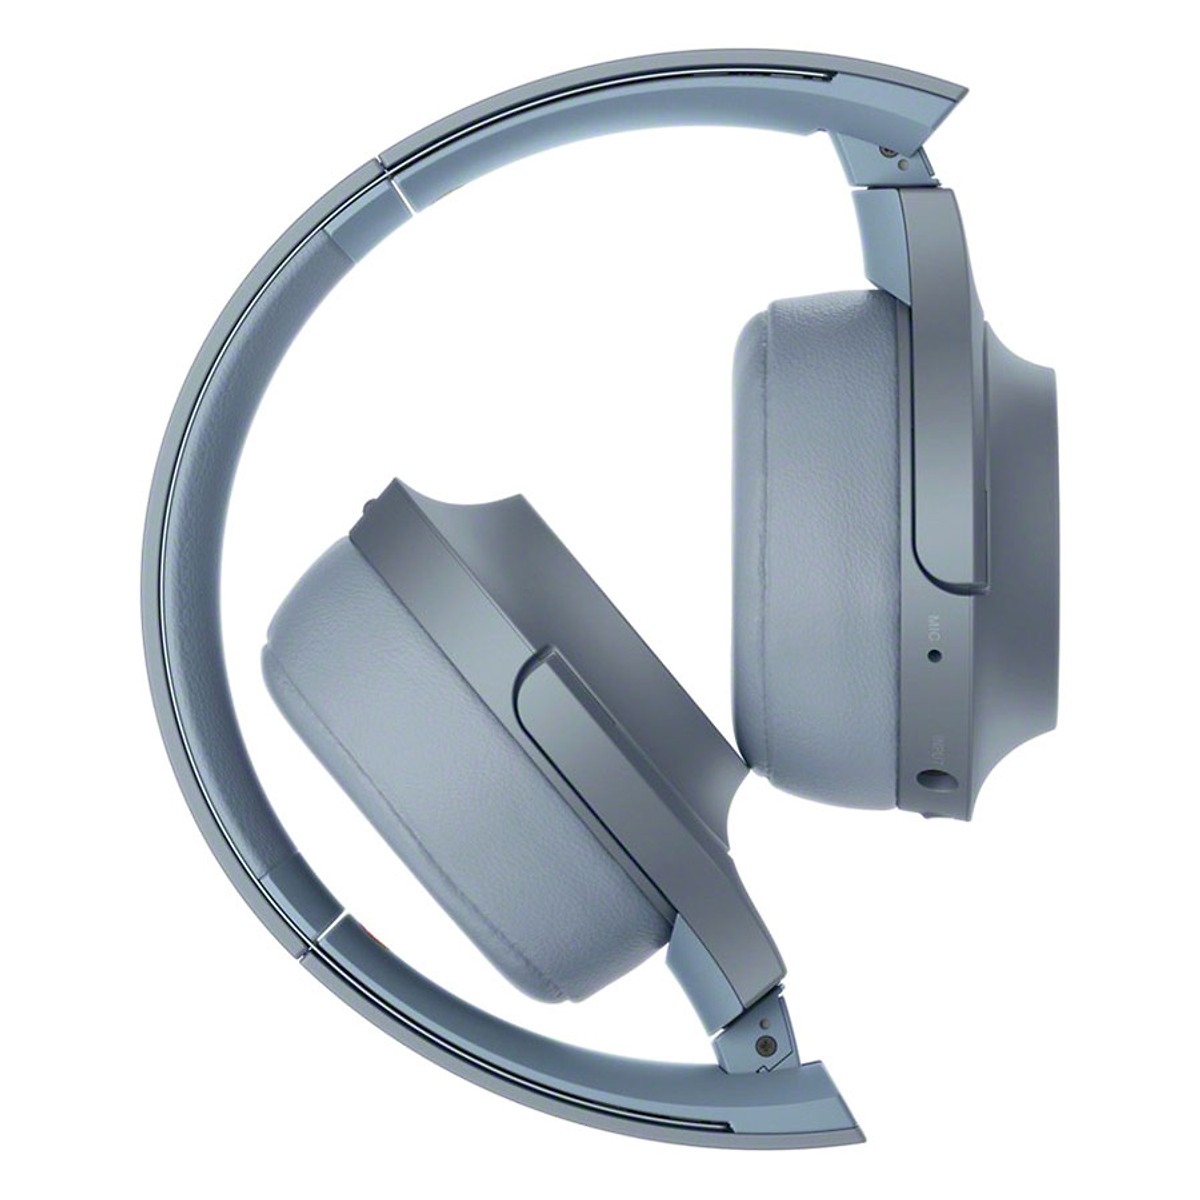 Tai nghe chụp đầu không dây SONY WH-H800/LM E màu xanh dương